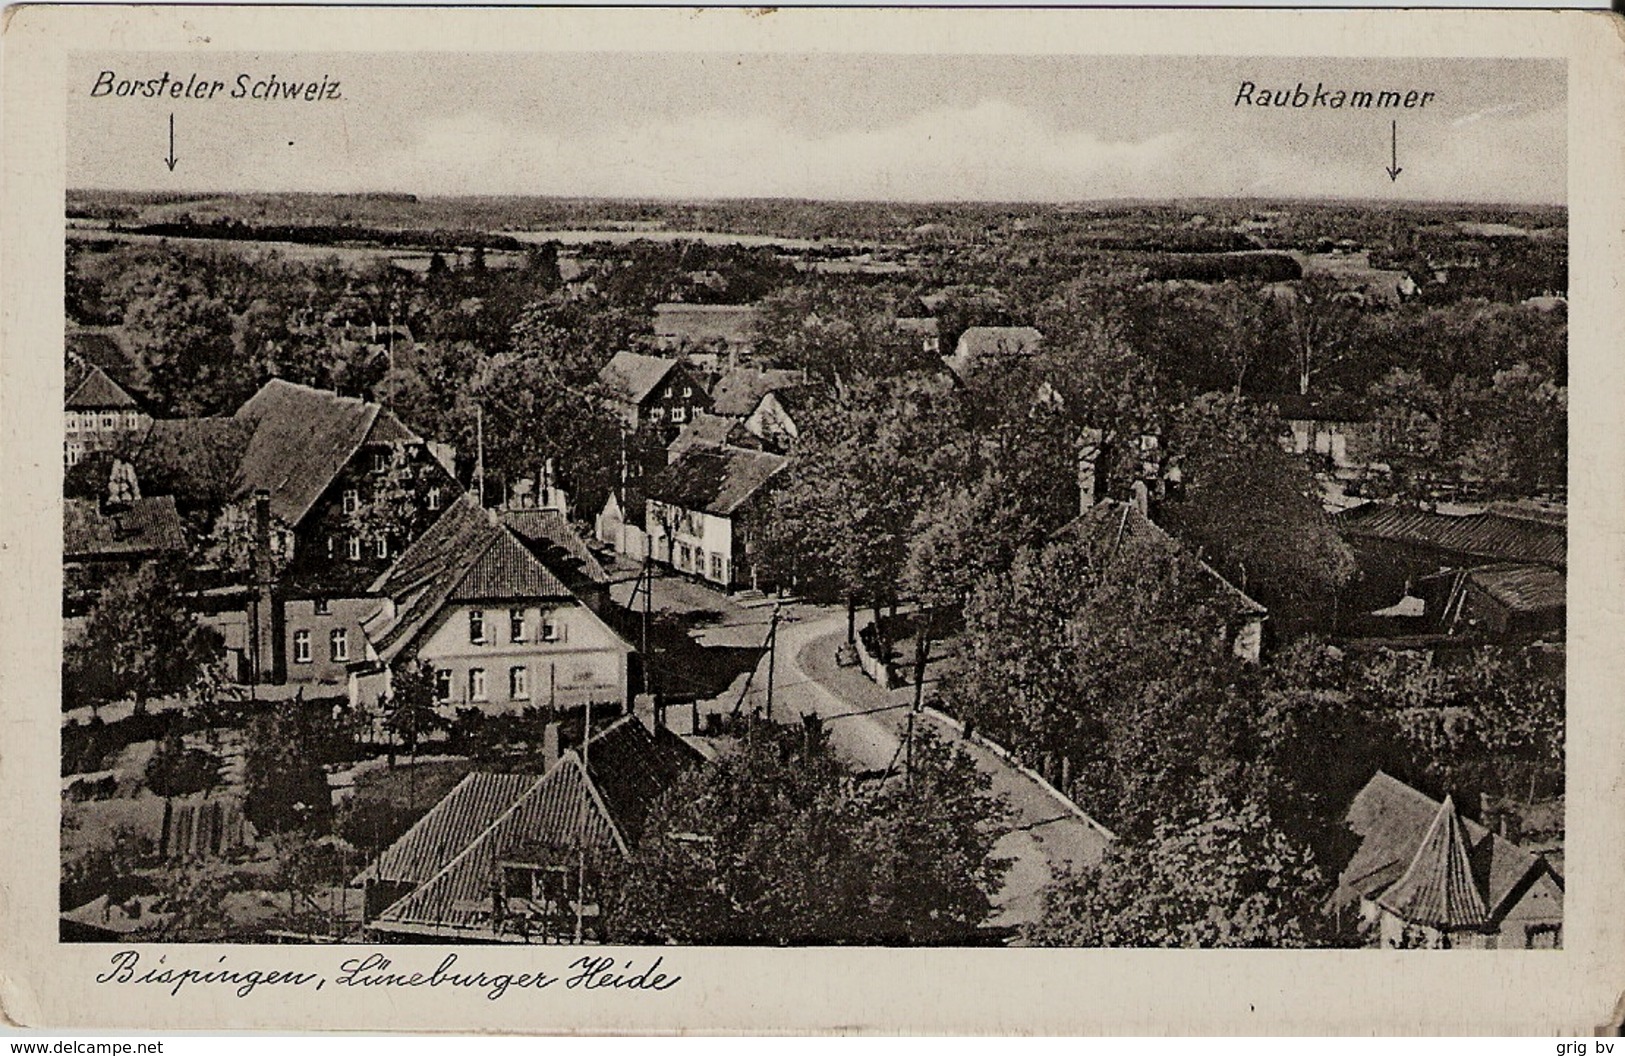 Bispingen, Luneburger Heide - Soltau